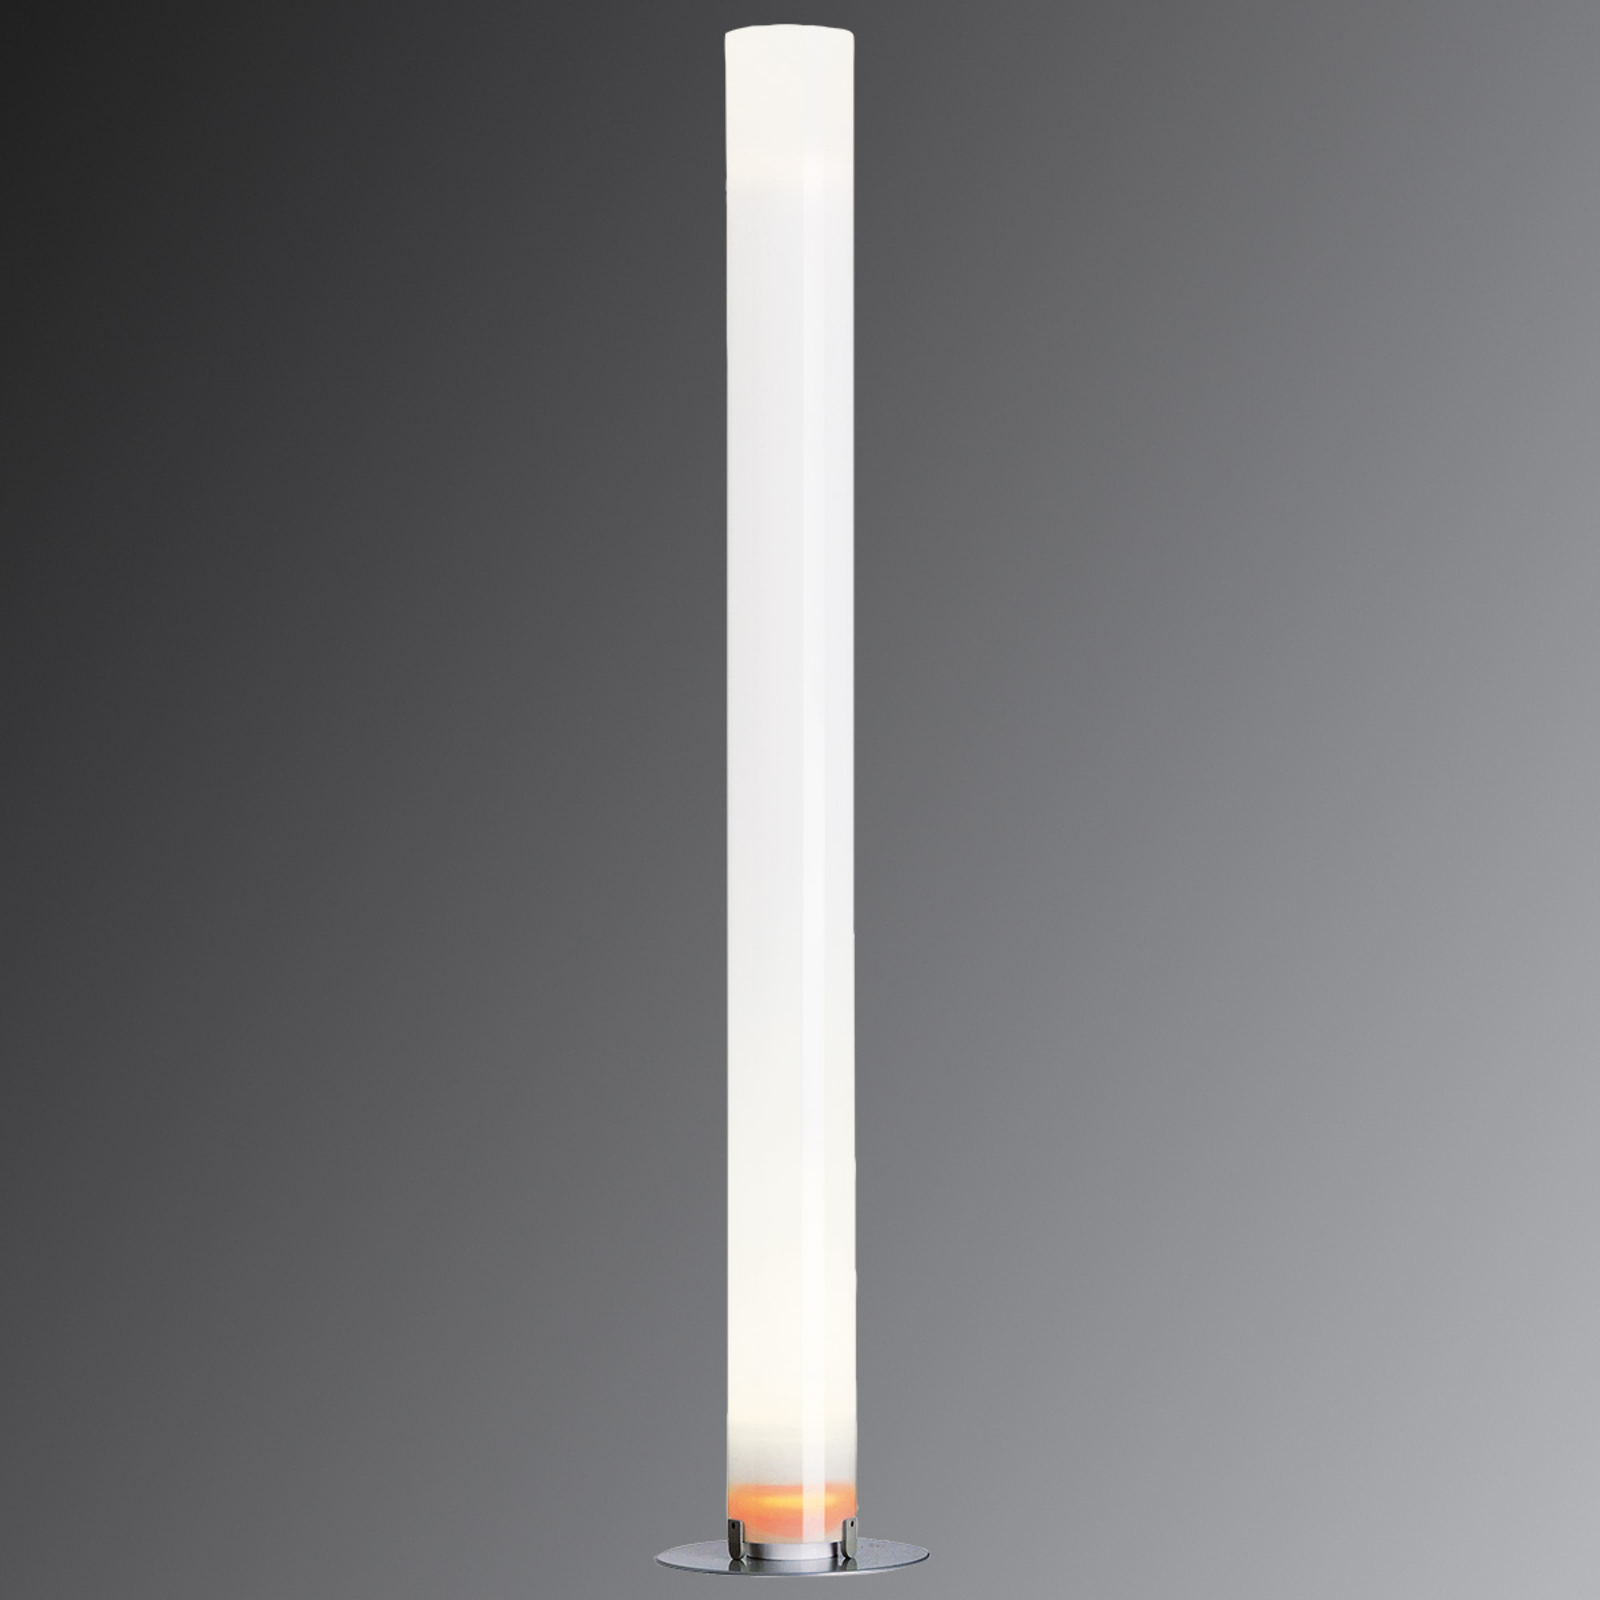 Lampa stojąca FLOS Stylos w kształcie walca, wysokość 200 cm